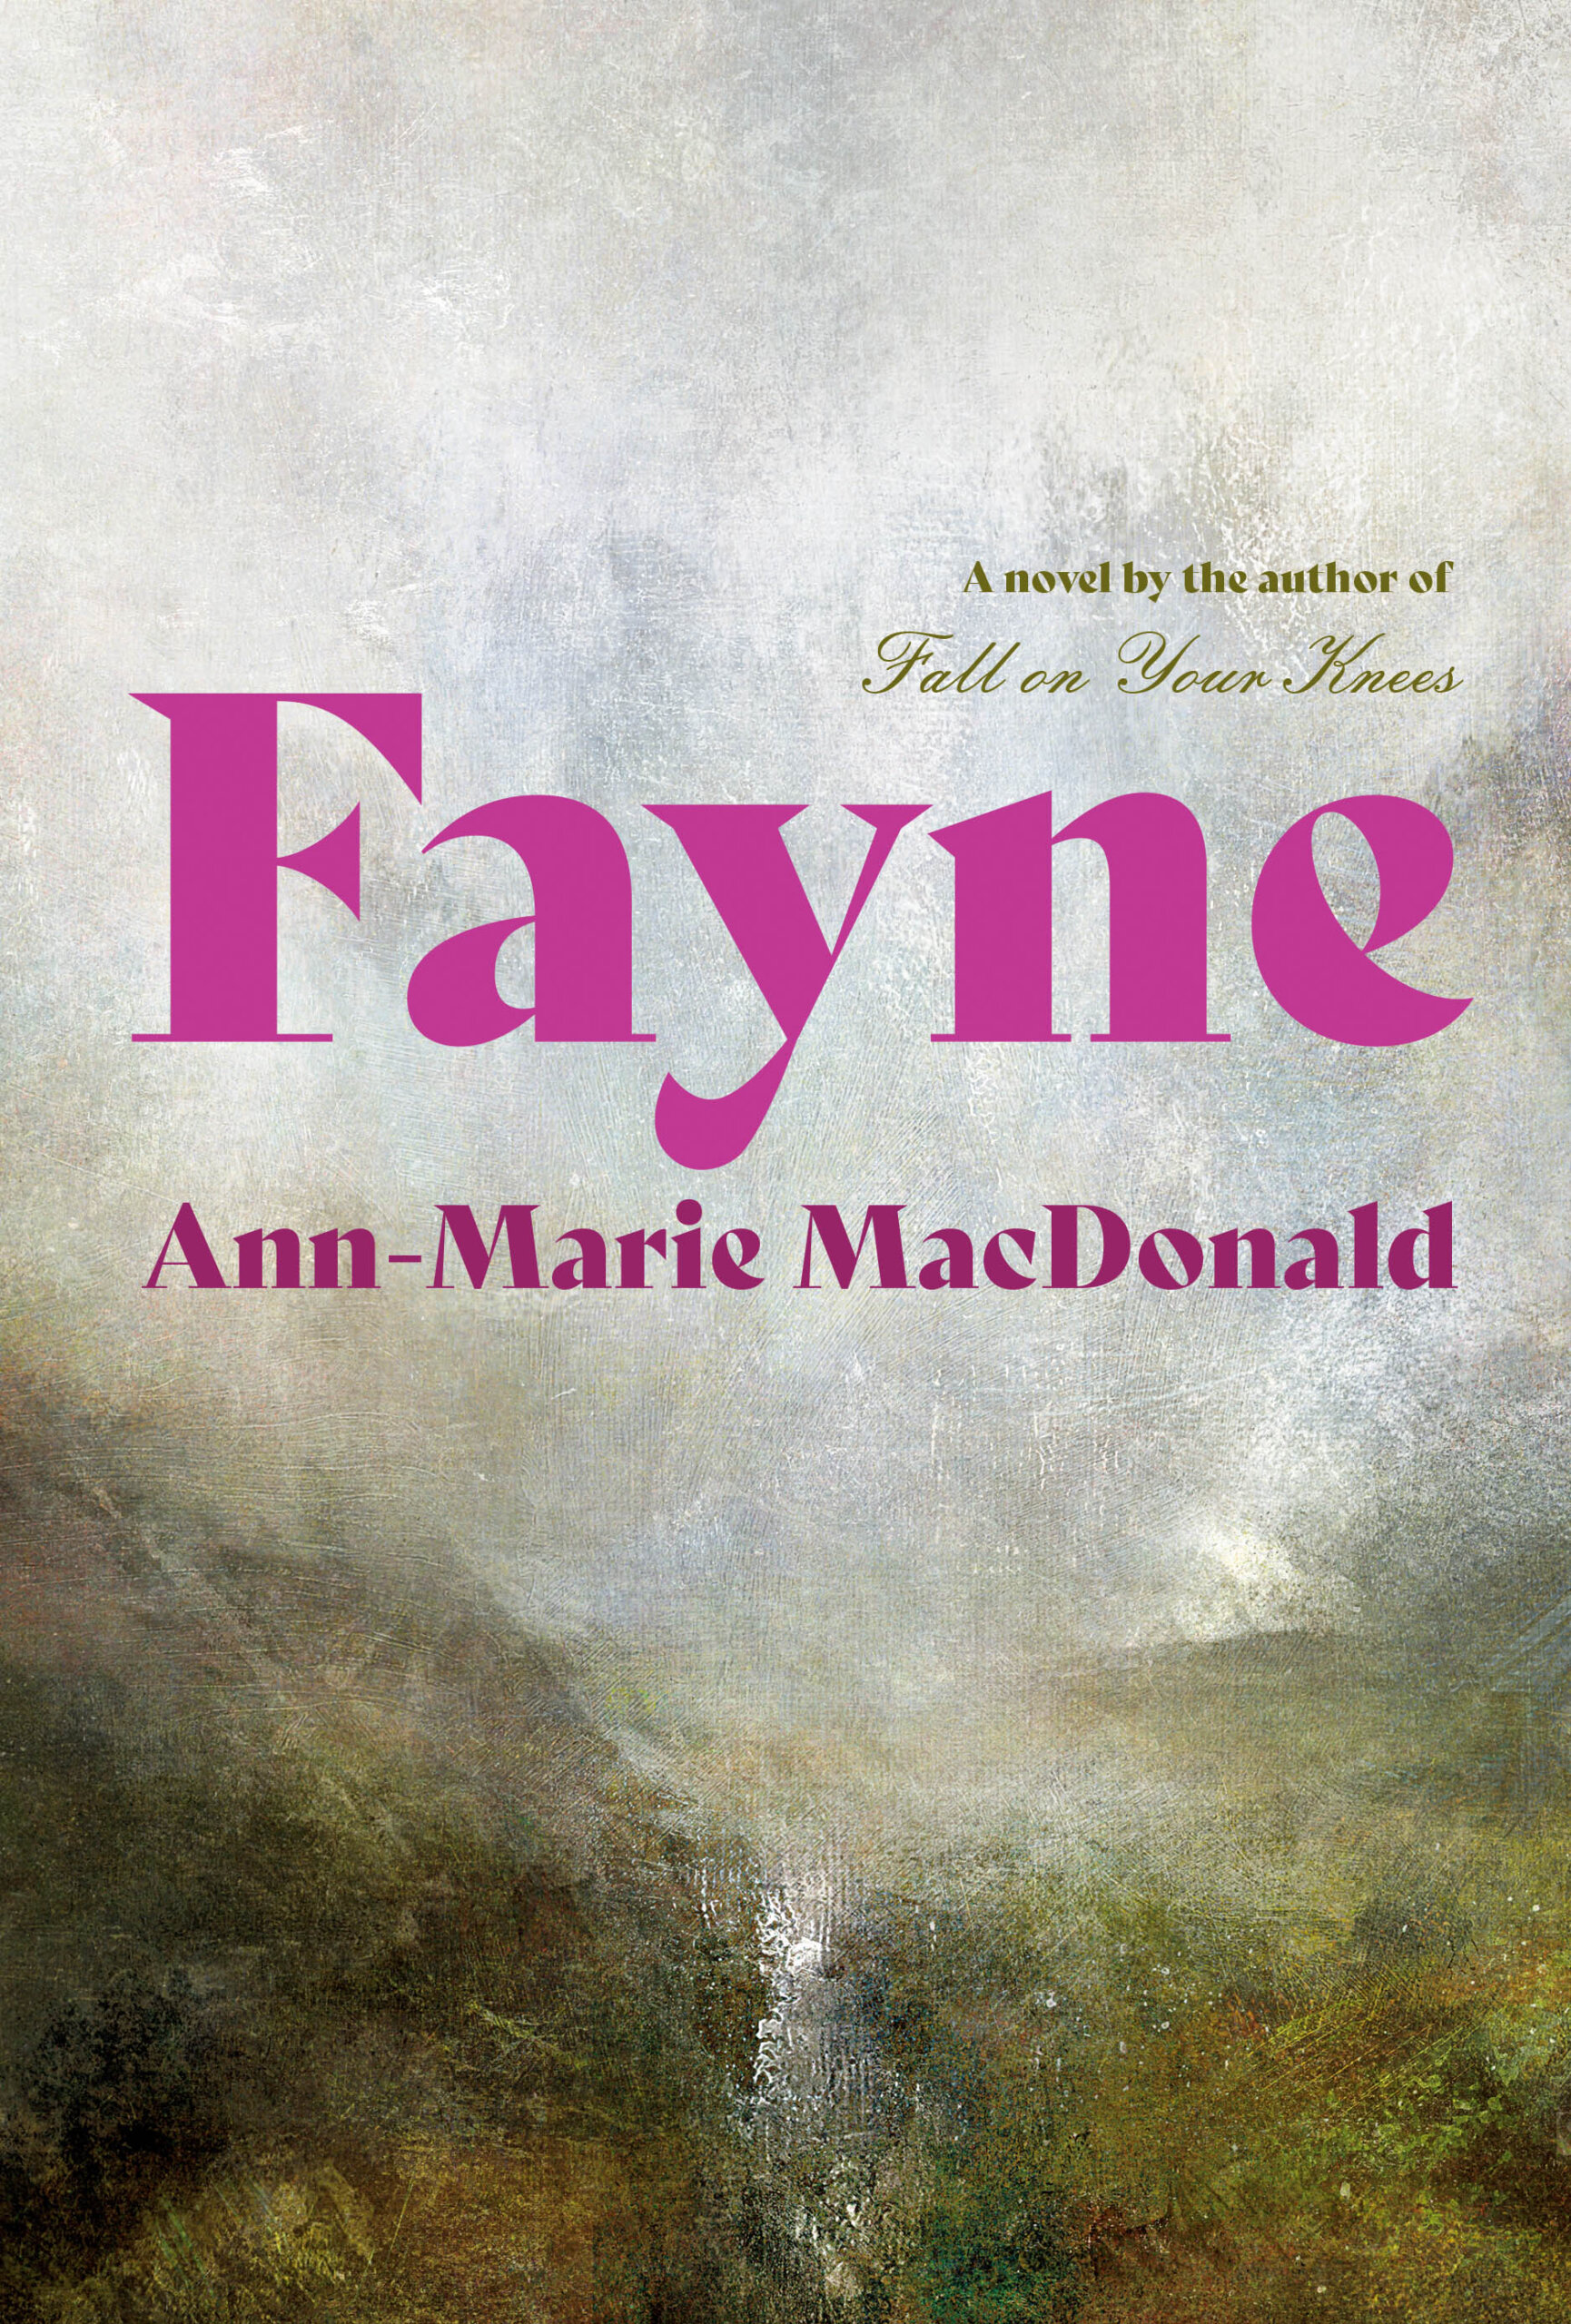 Fanyne by Ann-Marie MacDonald